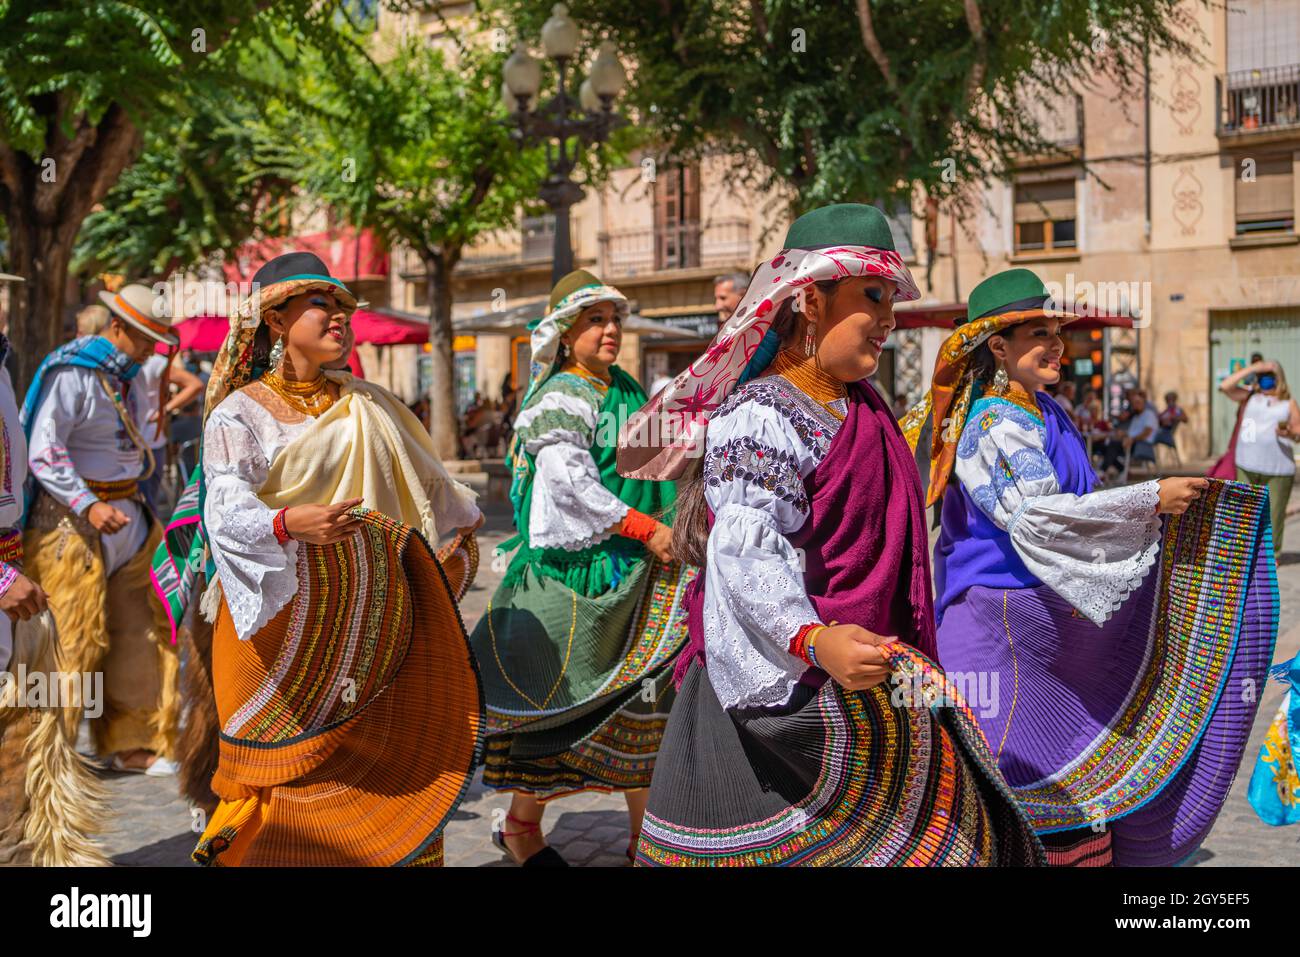 Danseurs folkloriques en Équateur costumes au festival folklorique Maire de Montblanc en Espagne Banque D'Images